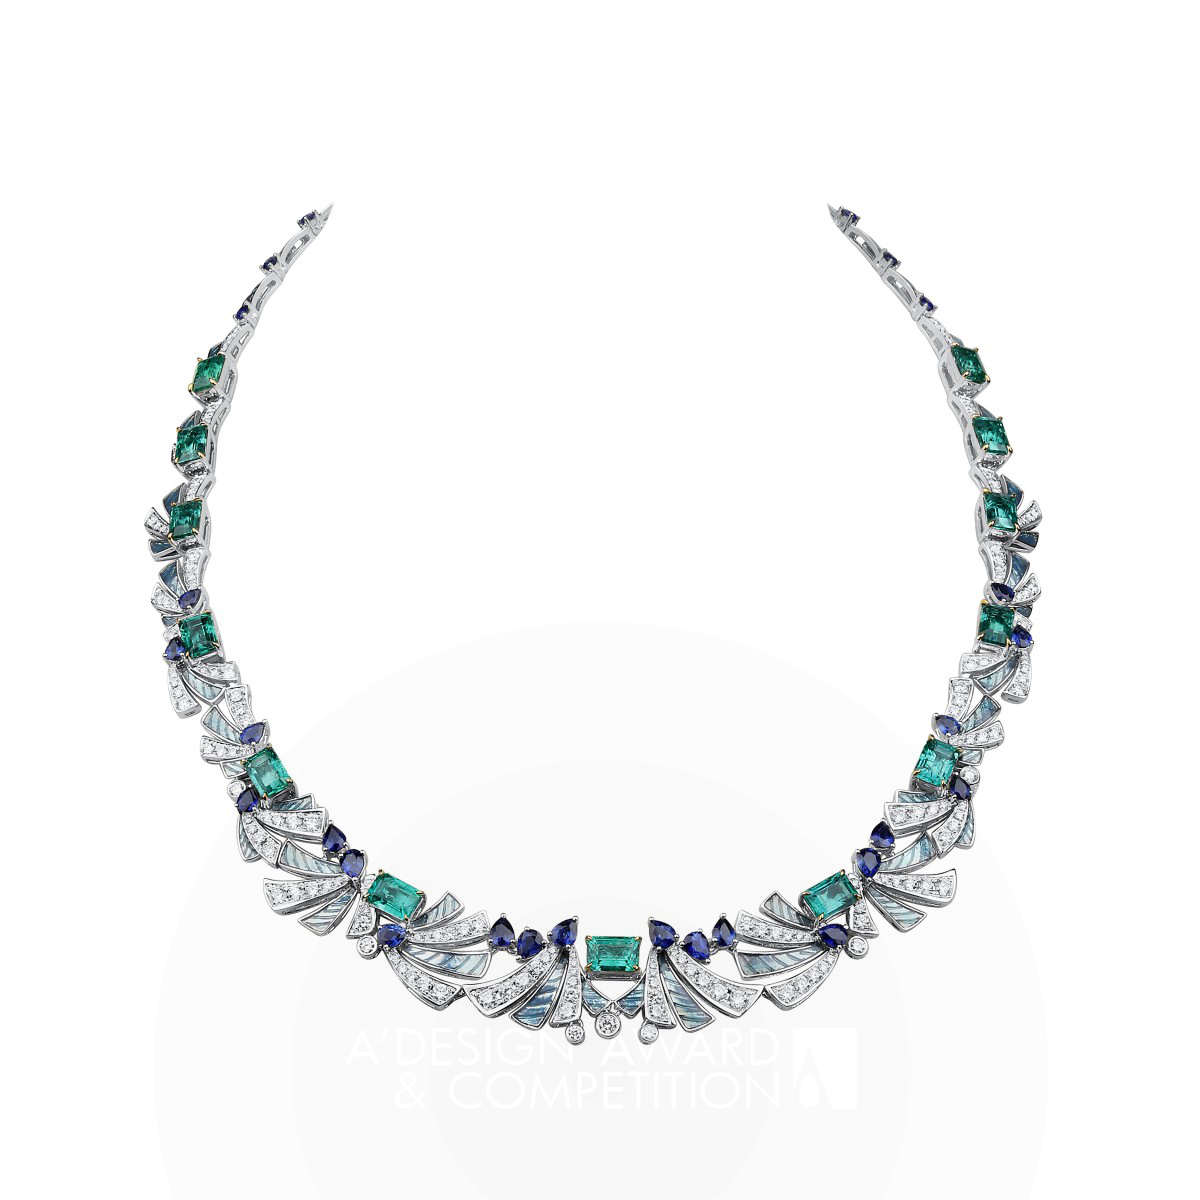 Nono Lu wins Silver at the prestigious A' Jewelry Design Award with Ocean Necklace.